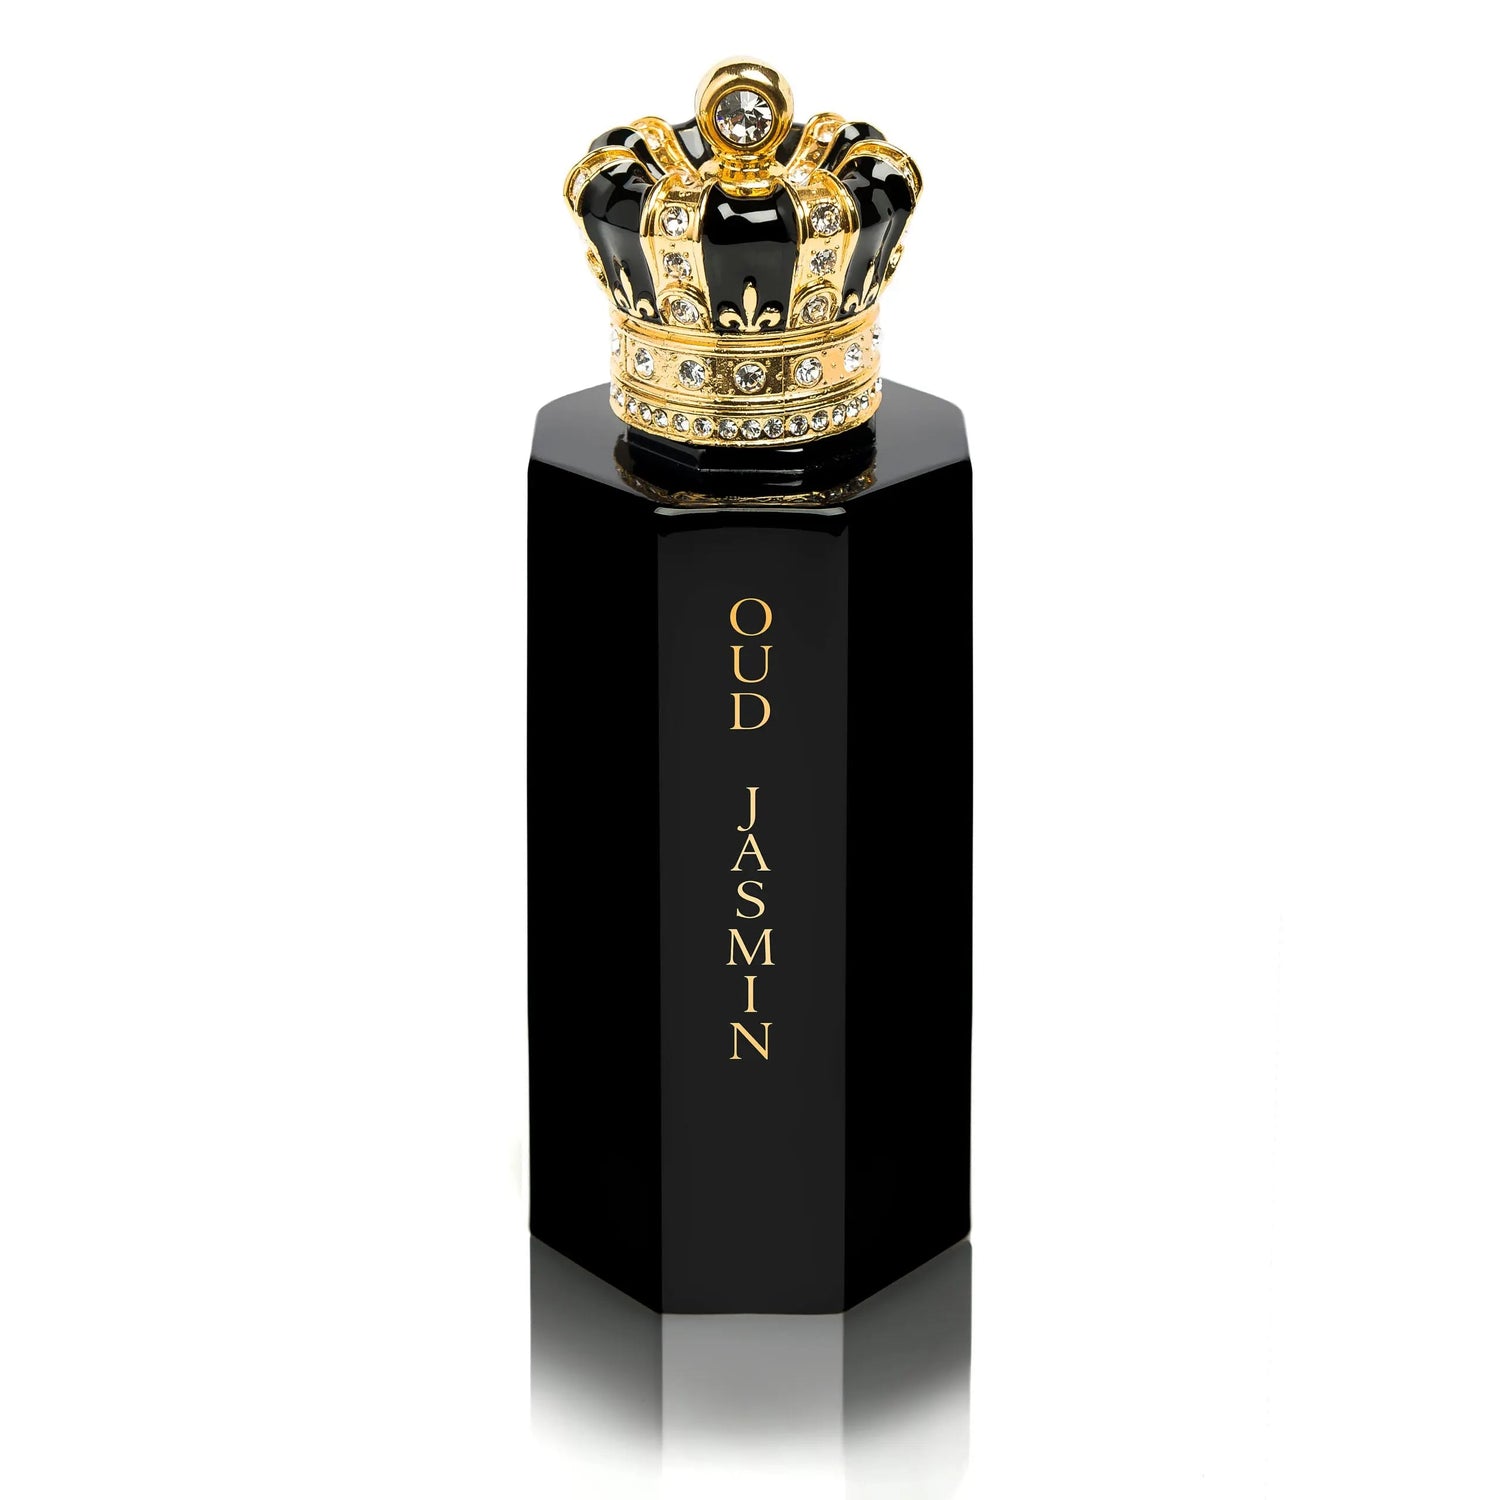 Oud Jasmin Royal Crown - 100 ml